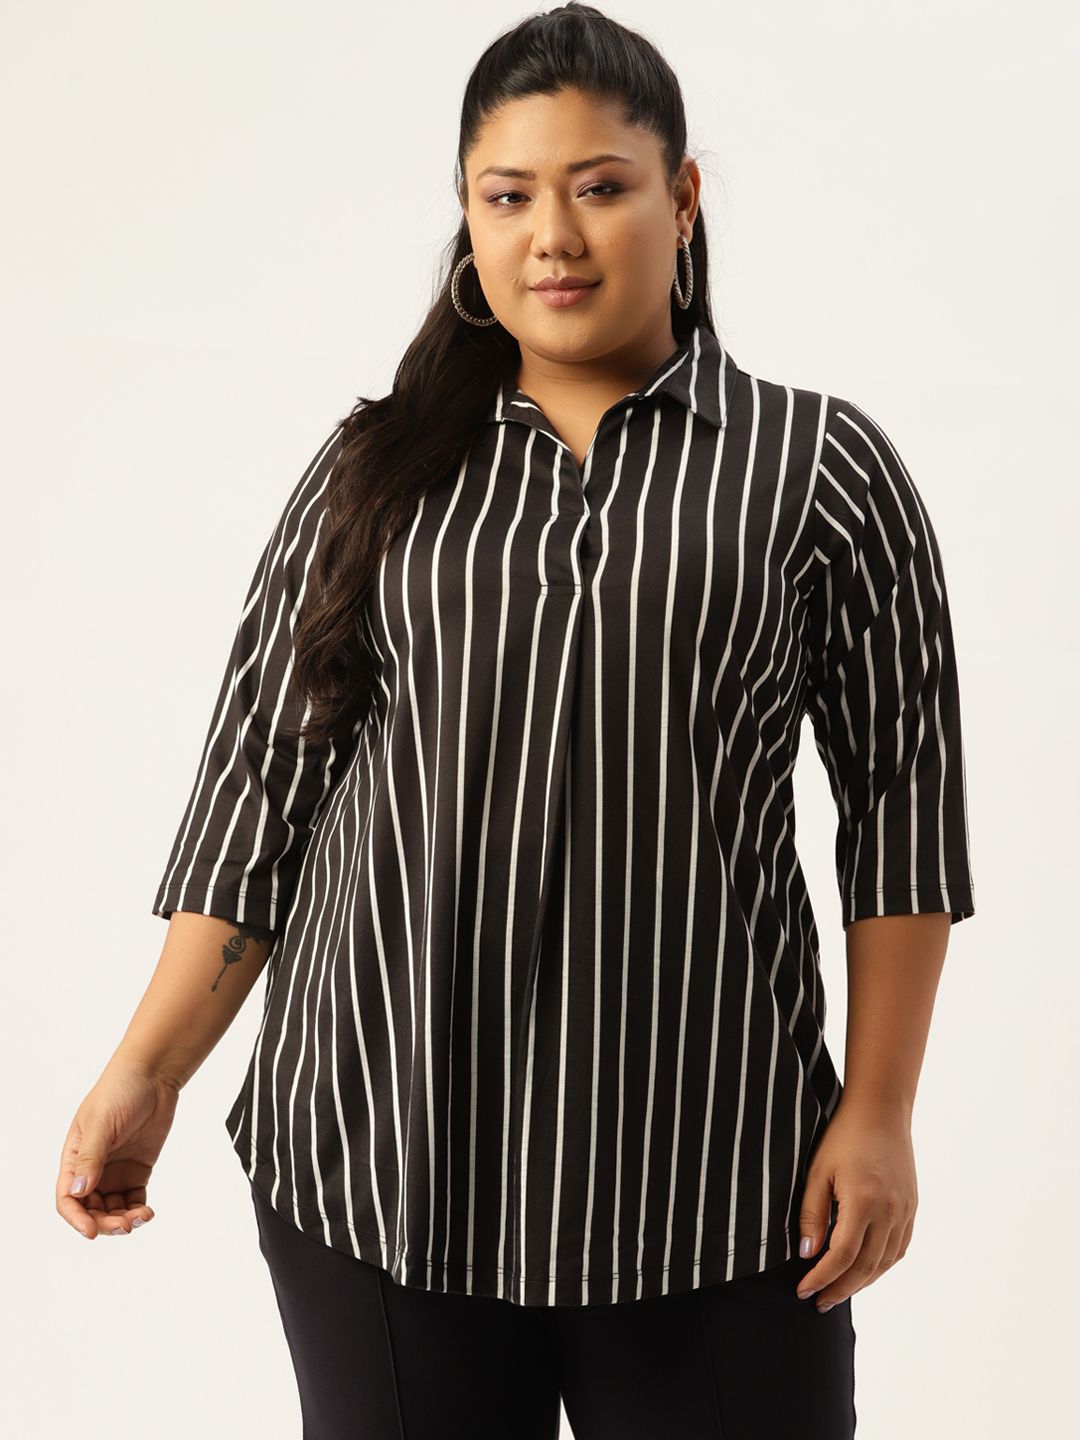 Amydus Women Plus Size Black & White Striped Shirt Style Top Price in India